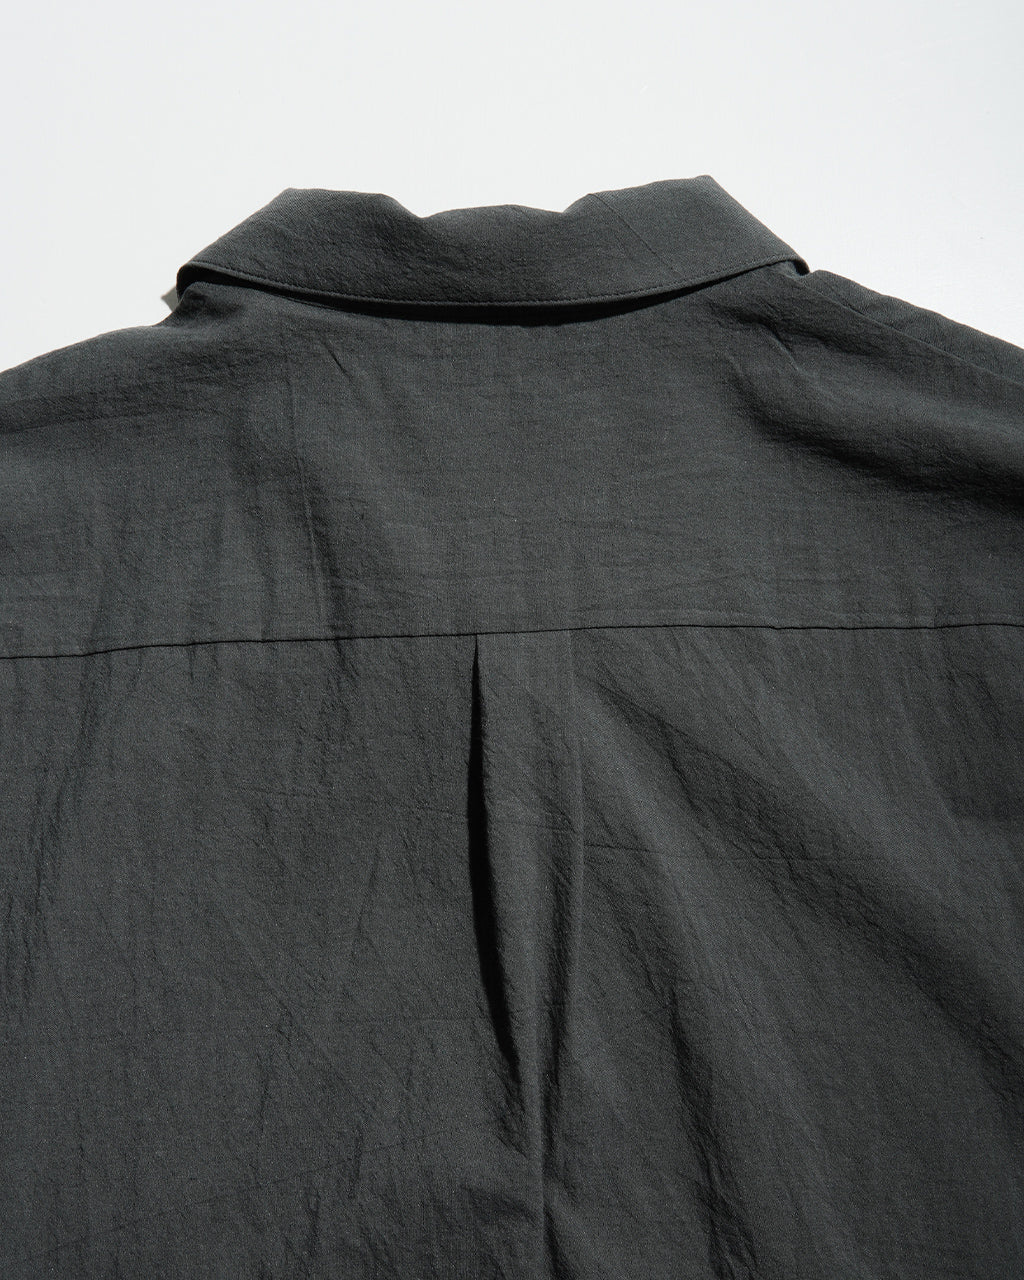 STILL BY HAND スティルバイハンド コットン シルク オープンカラーシャツ OPEN COLLAR SHIRTS コットン シルク SH08242【送料無料】